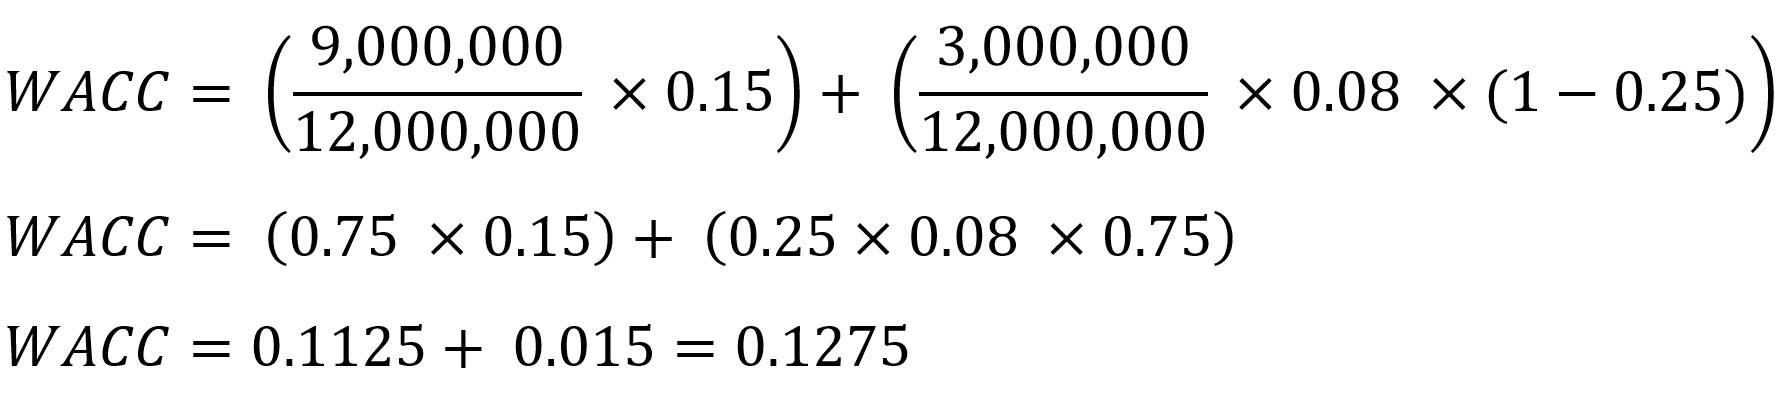 Abbildung: Beispiel zur Berechung der gewichteten durchschnittlichen Kapitalkosten (WACC)